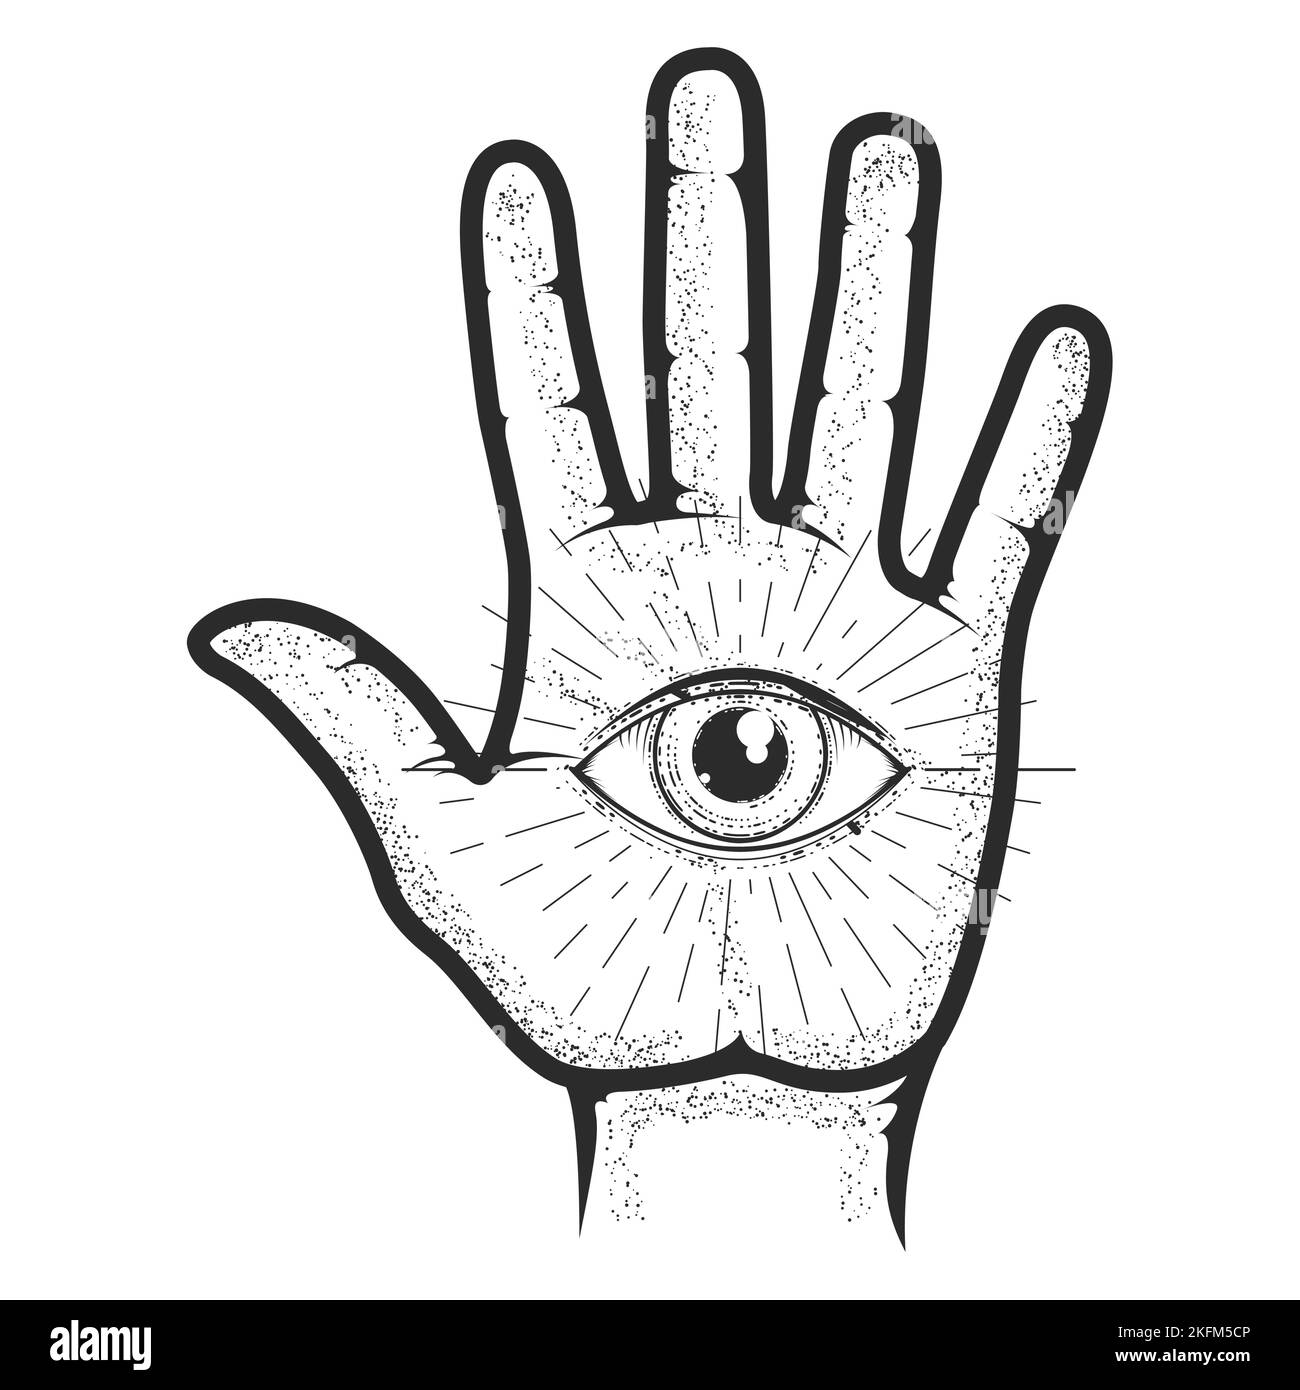 Handfläche der Seele mit allen sehenden Augen, mystische und okkulte Palmistik, esoterische und Wahrsagerei von Hand, Vektor Stock Vektor